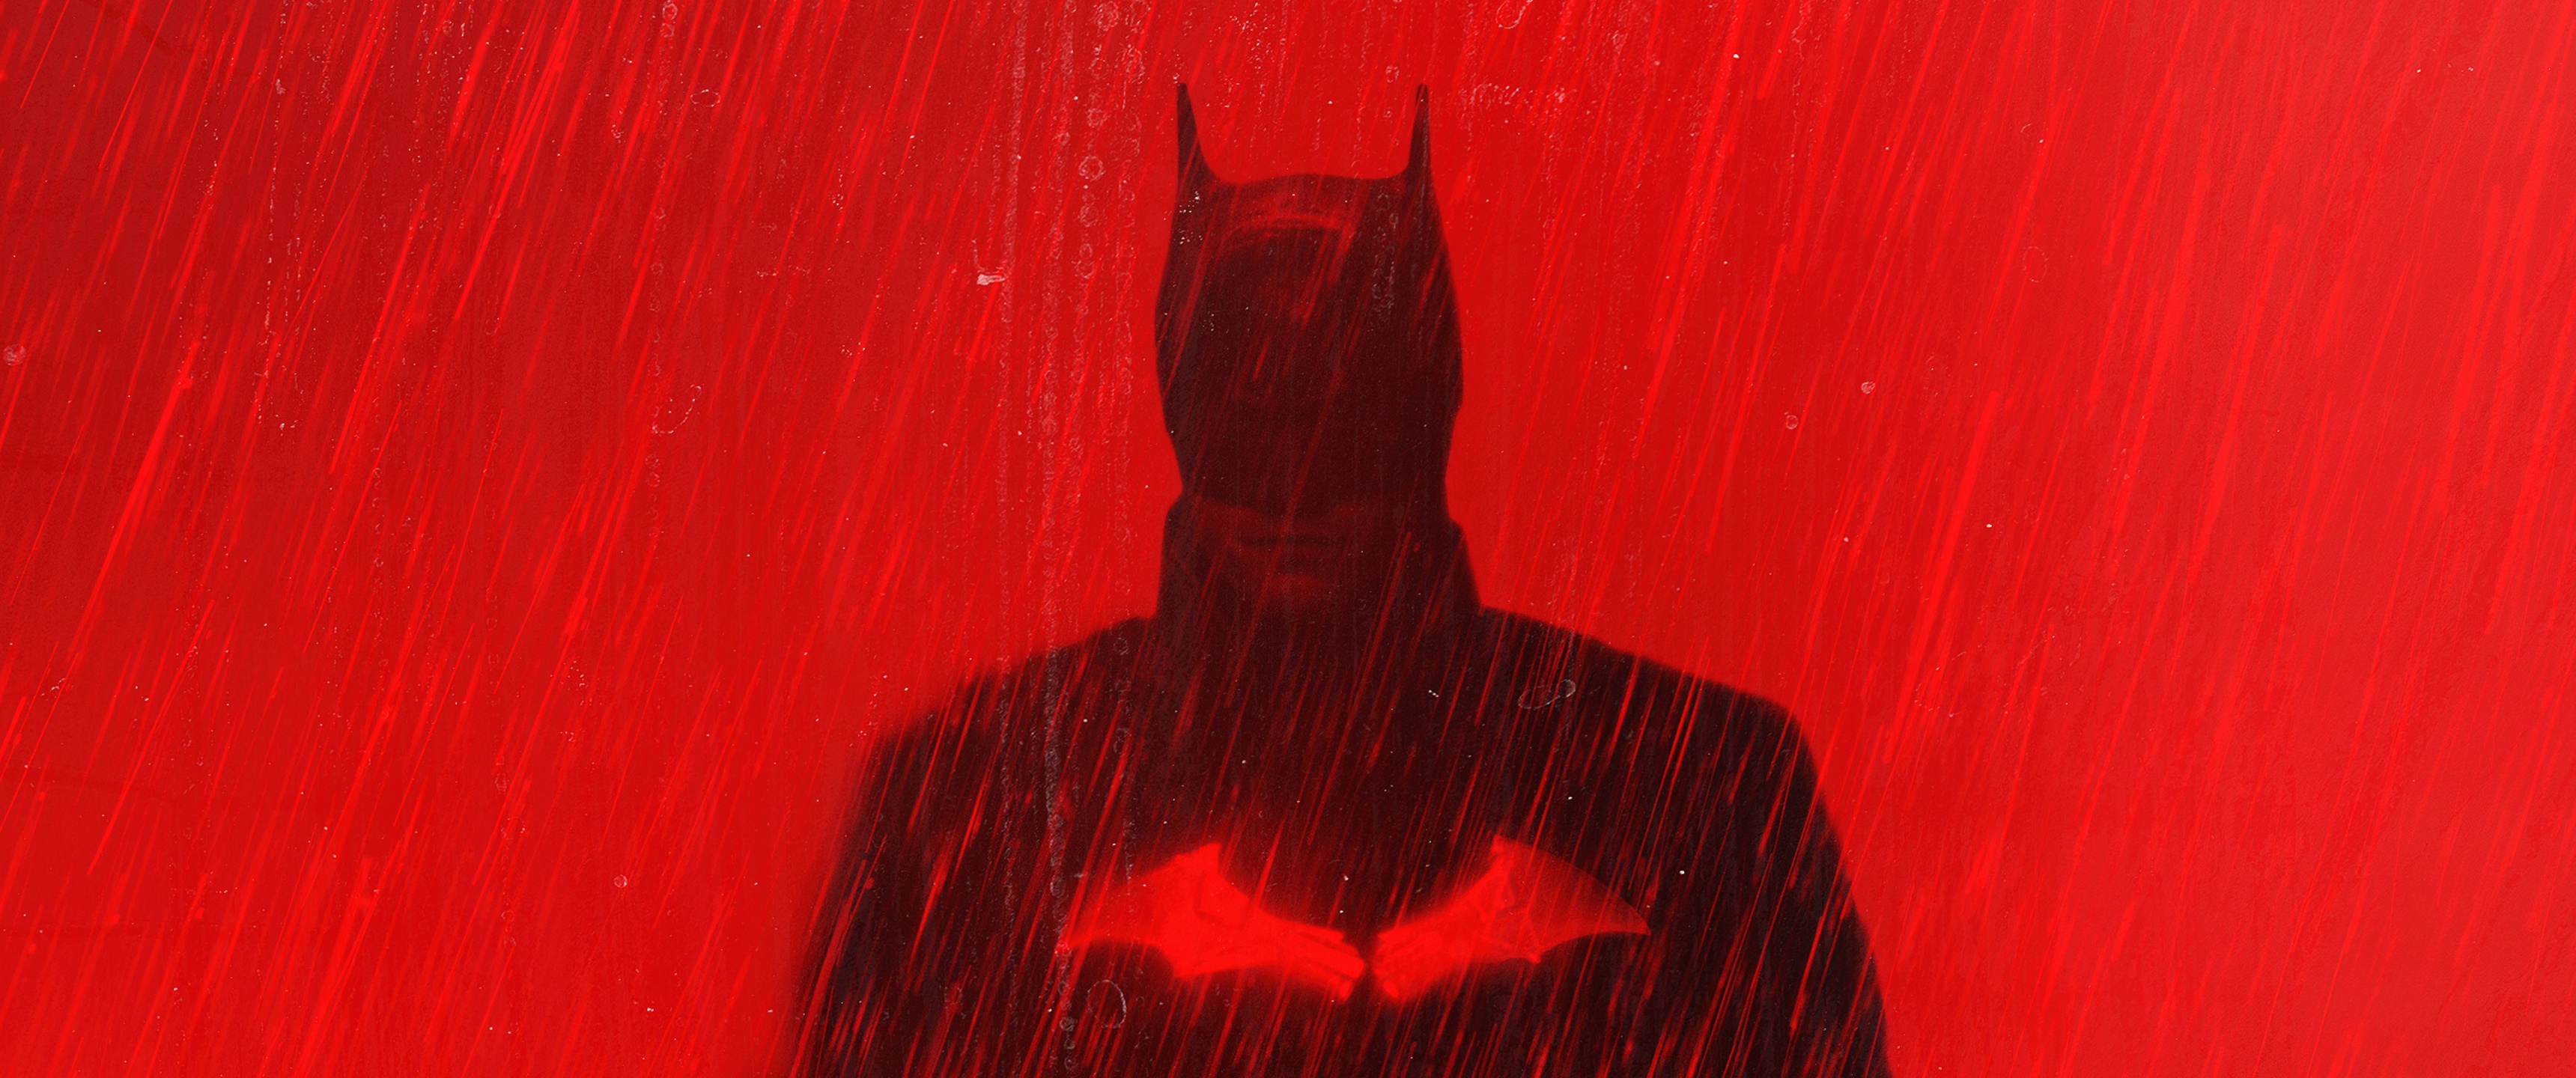 Batman, The Batman, DC Comics, The Batman (Movie), HD wallpaper